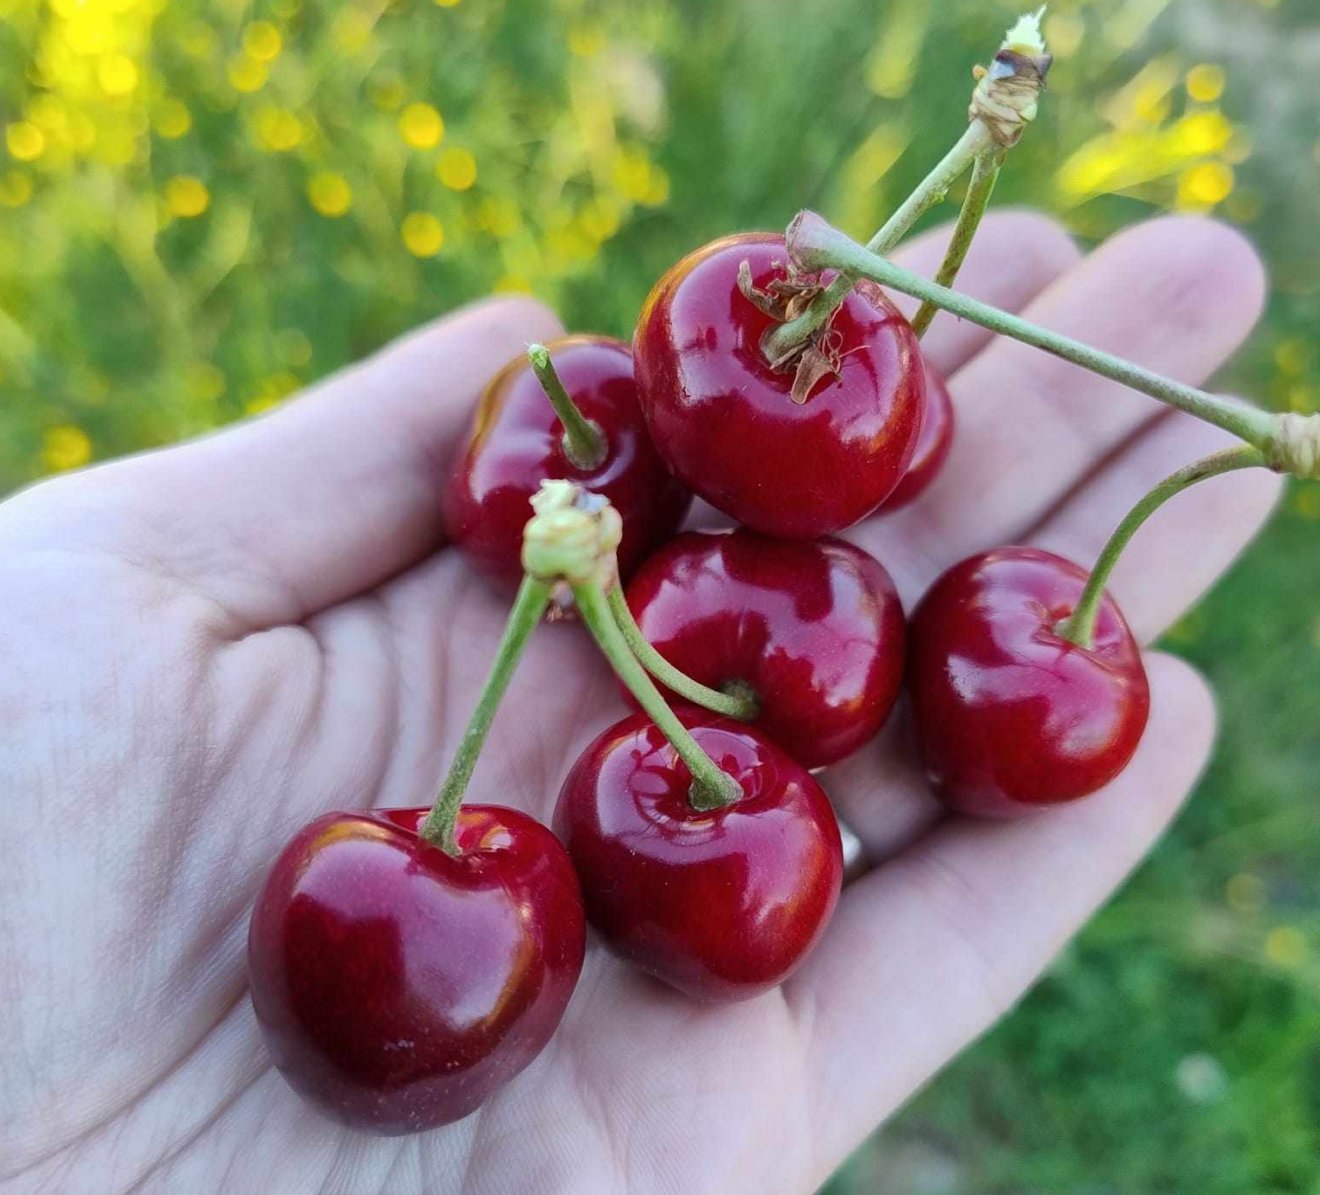 Igazi cseresznyeíze van a híres magyardécsei gyümölcsnek, közben elárasztja a romániai piacot a vízízű, vegyszerezett áru